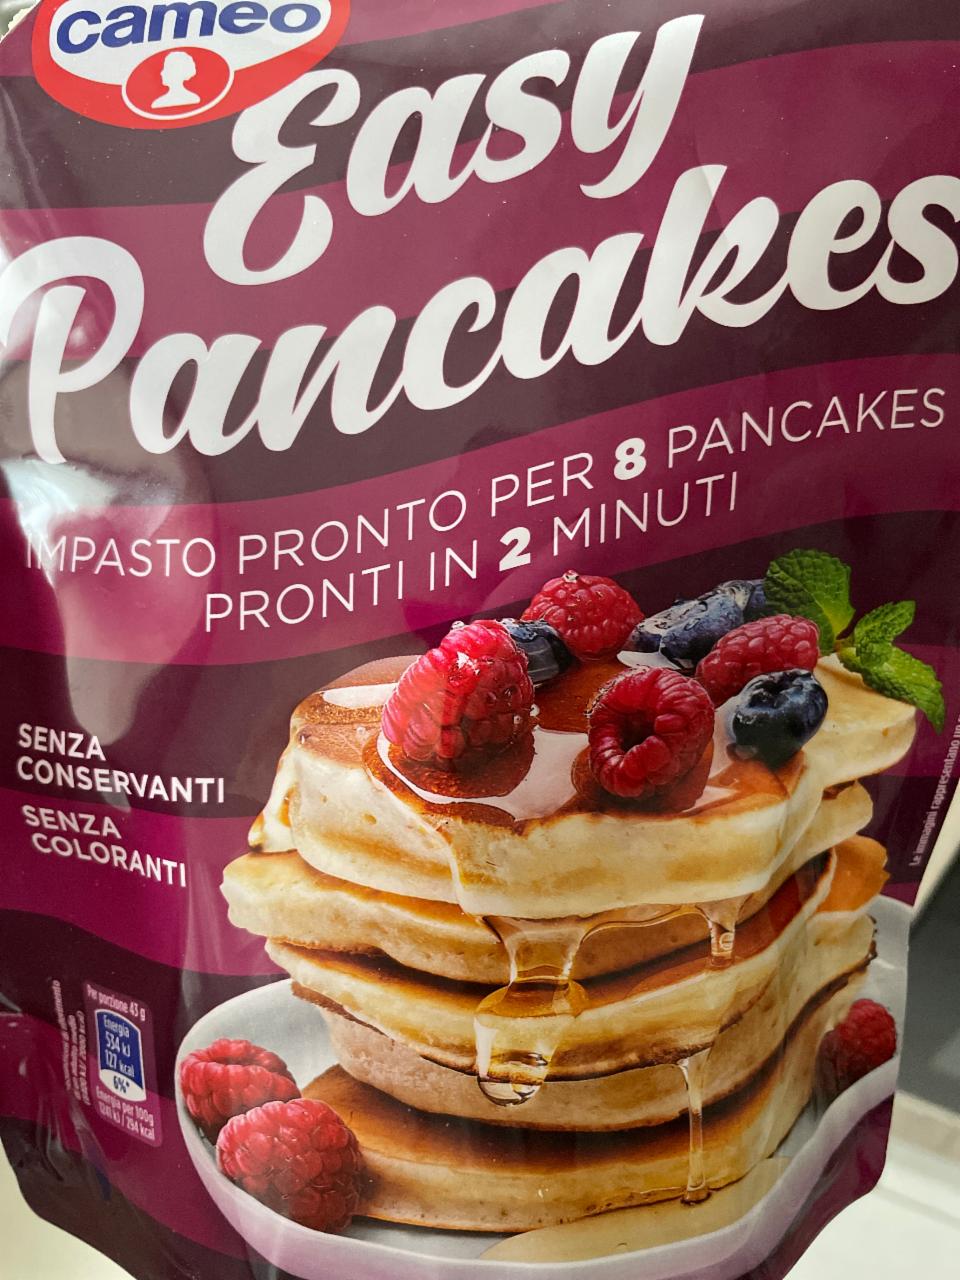 Фото - Easy Pancakes Cameo